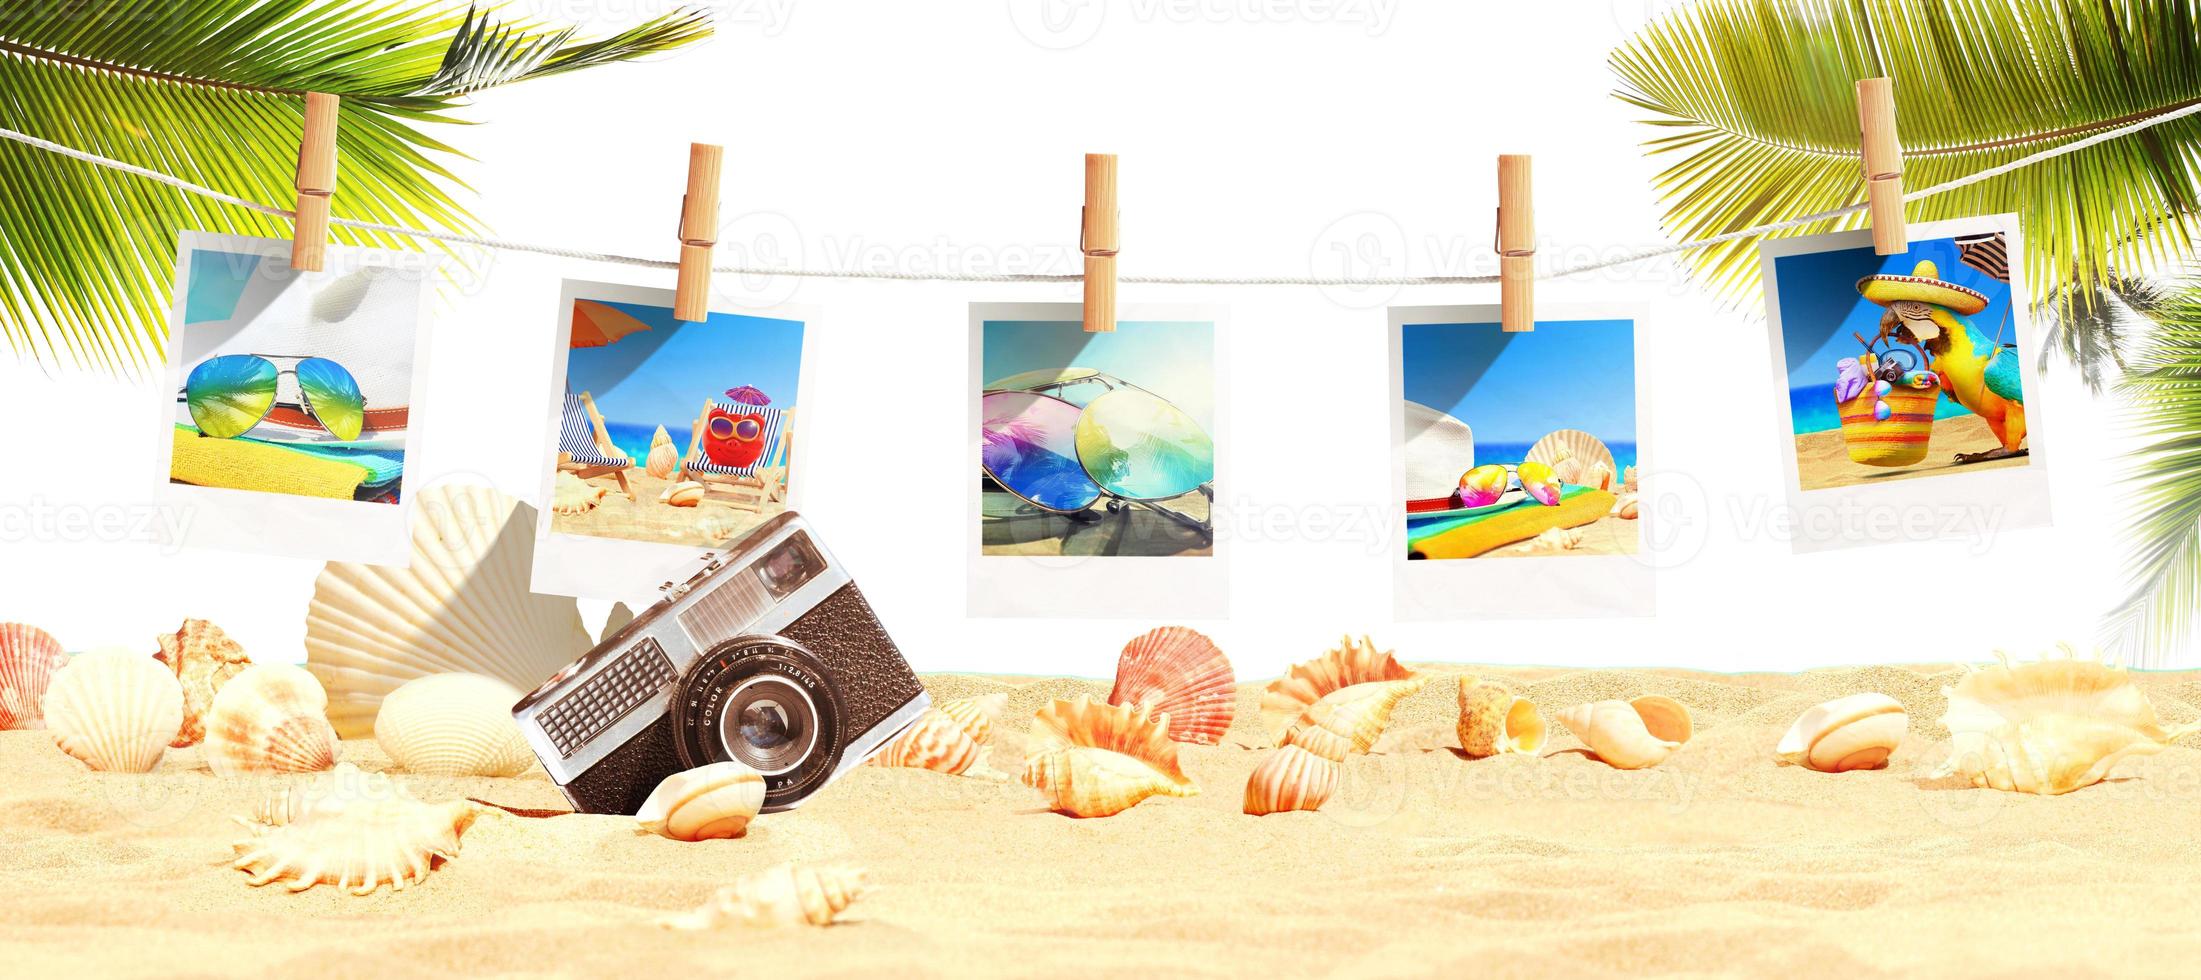 paesaggio con foto sulla spiaggia tropicale - vacanze estive.